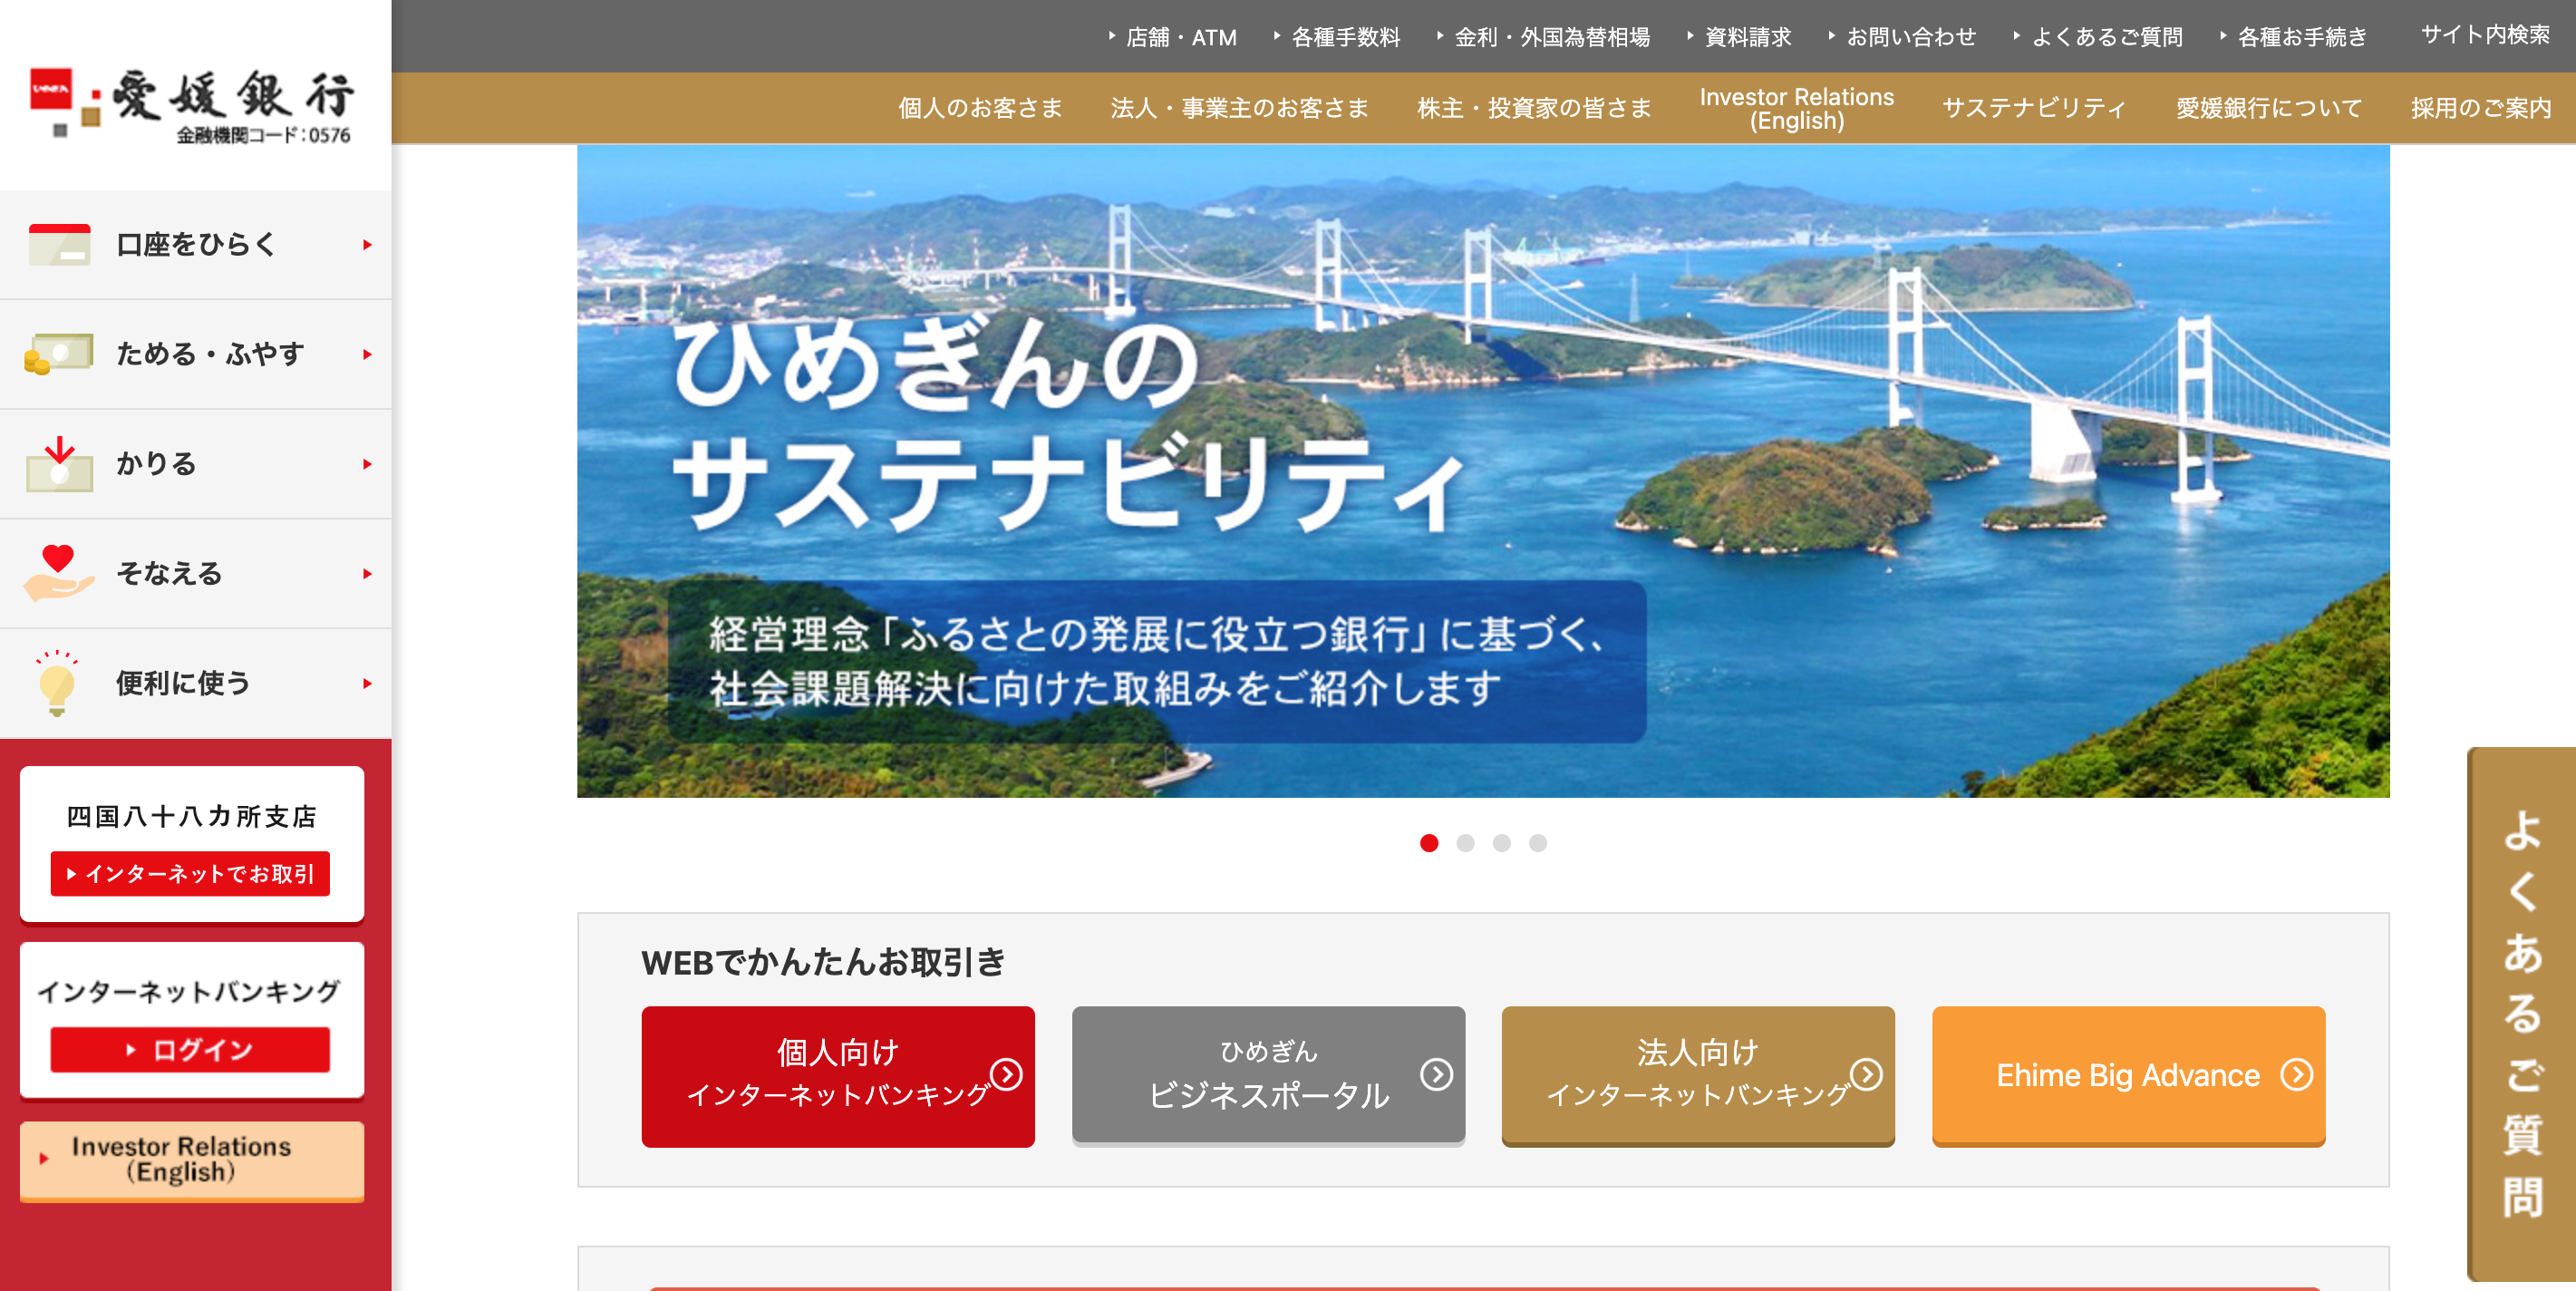 愛媛銀行のWebサイトトップページ